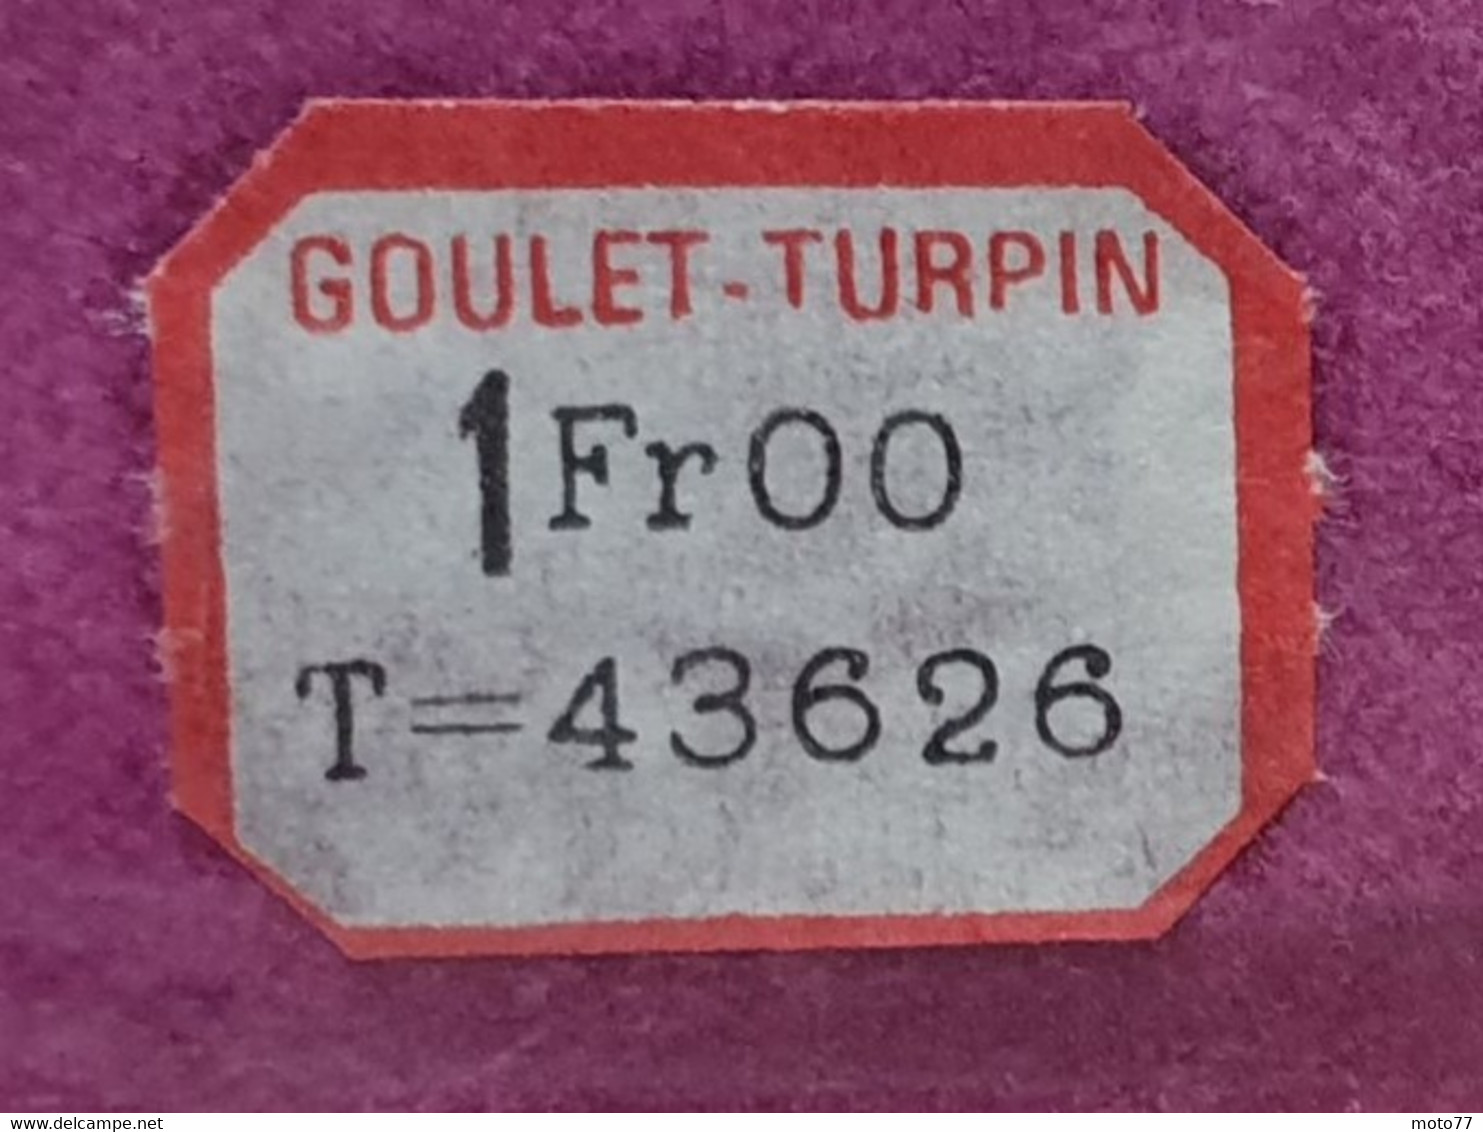 Ancien NAPPERON rond - environ diamètre 16.5 cm - Plastique - "neuf de stock" magasin GOULET TURPIN Reims - vers 1960